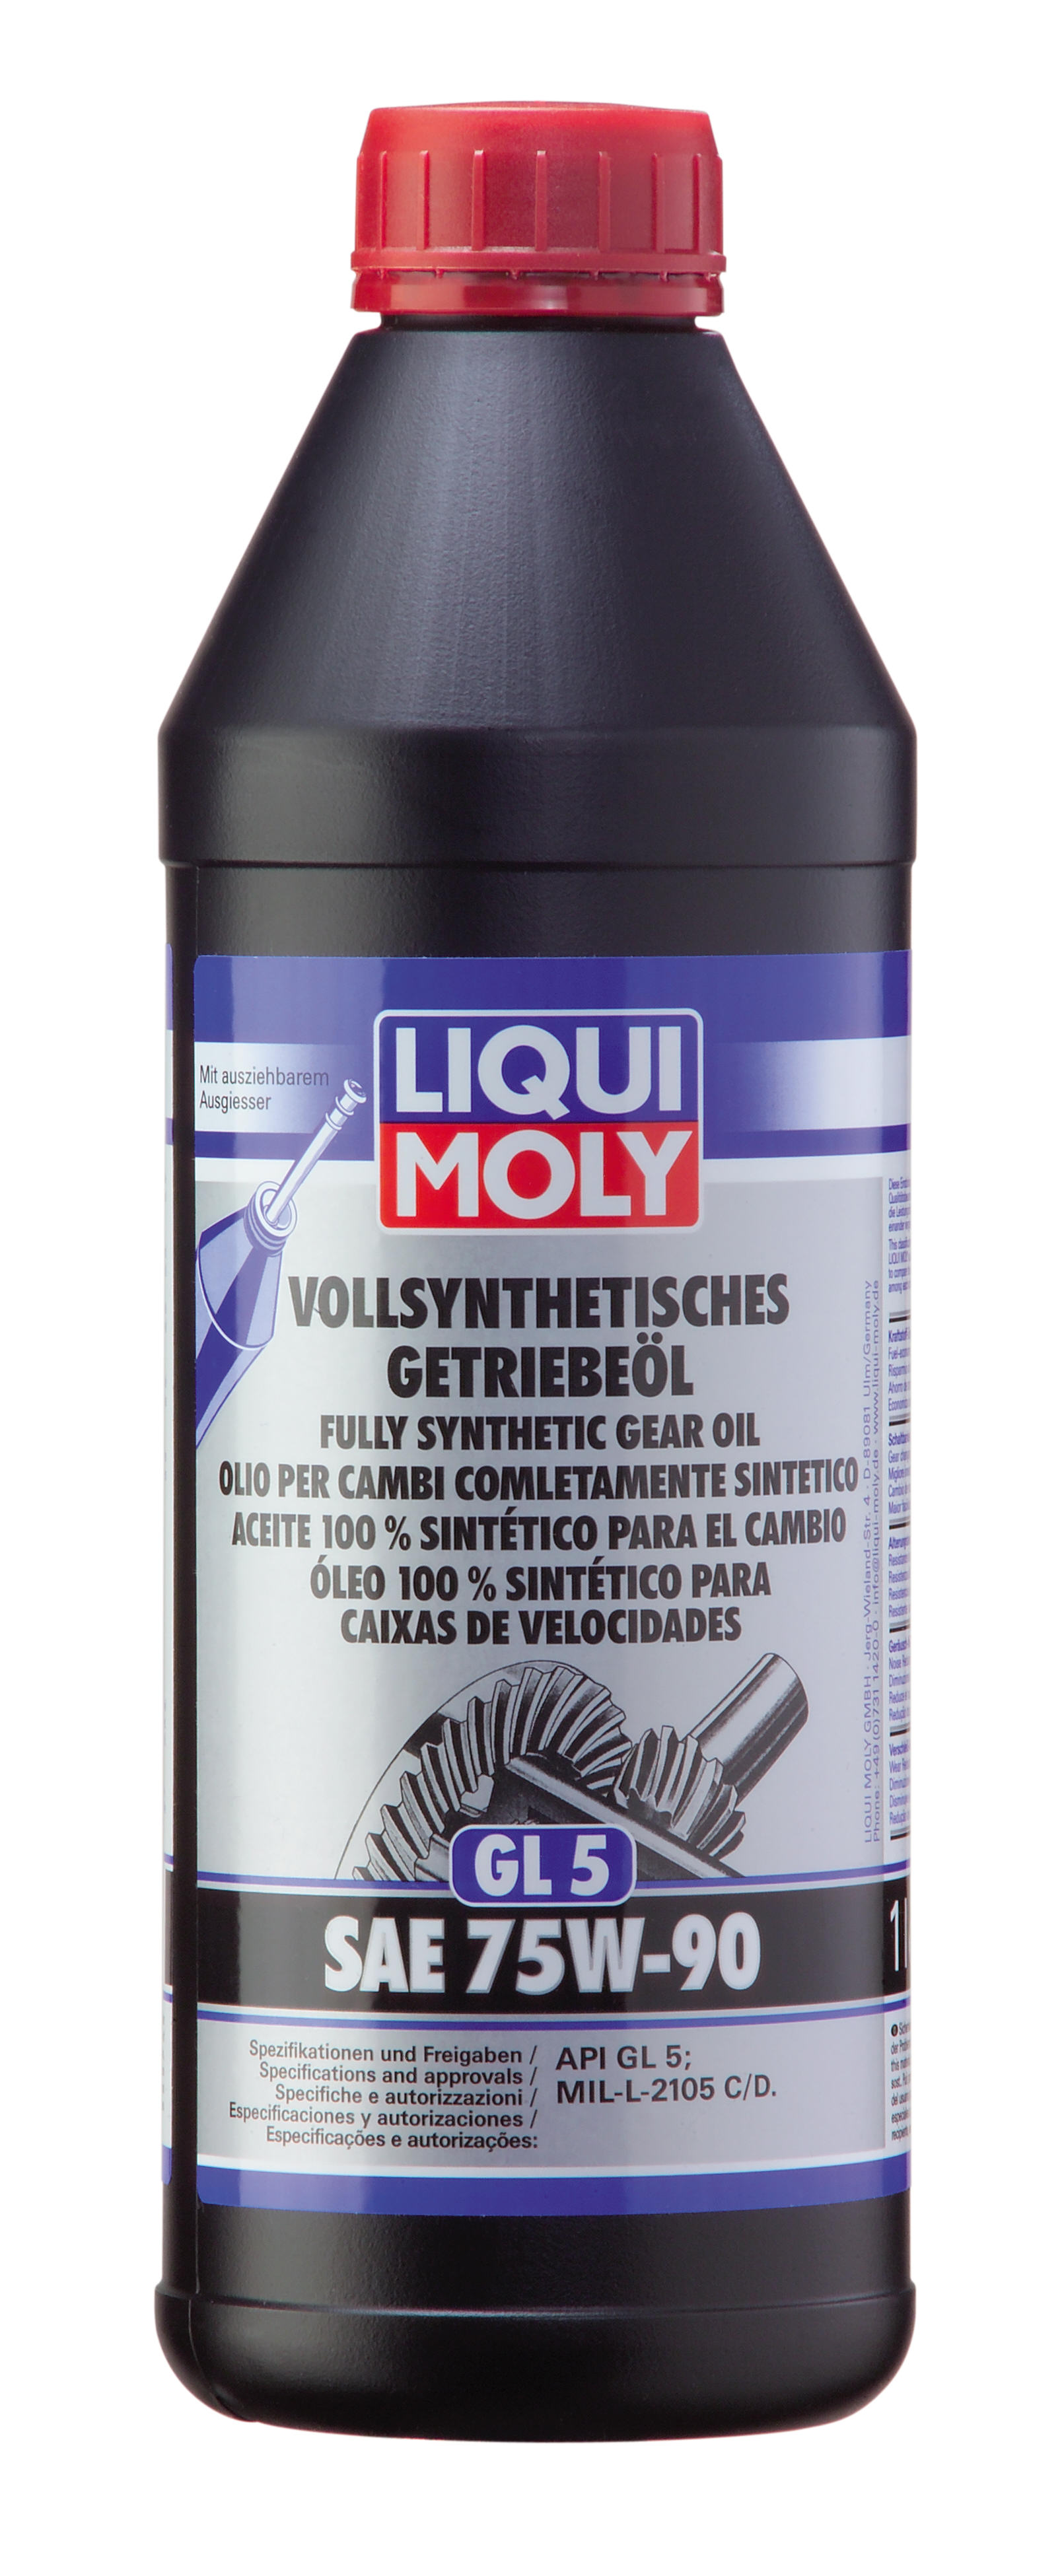 75w-90 Vollsynthetisches Getriebeoil gl5, 1л (синт.транс.масло) - Liqui Moly 1950